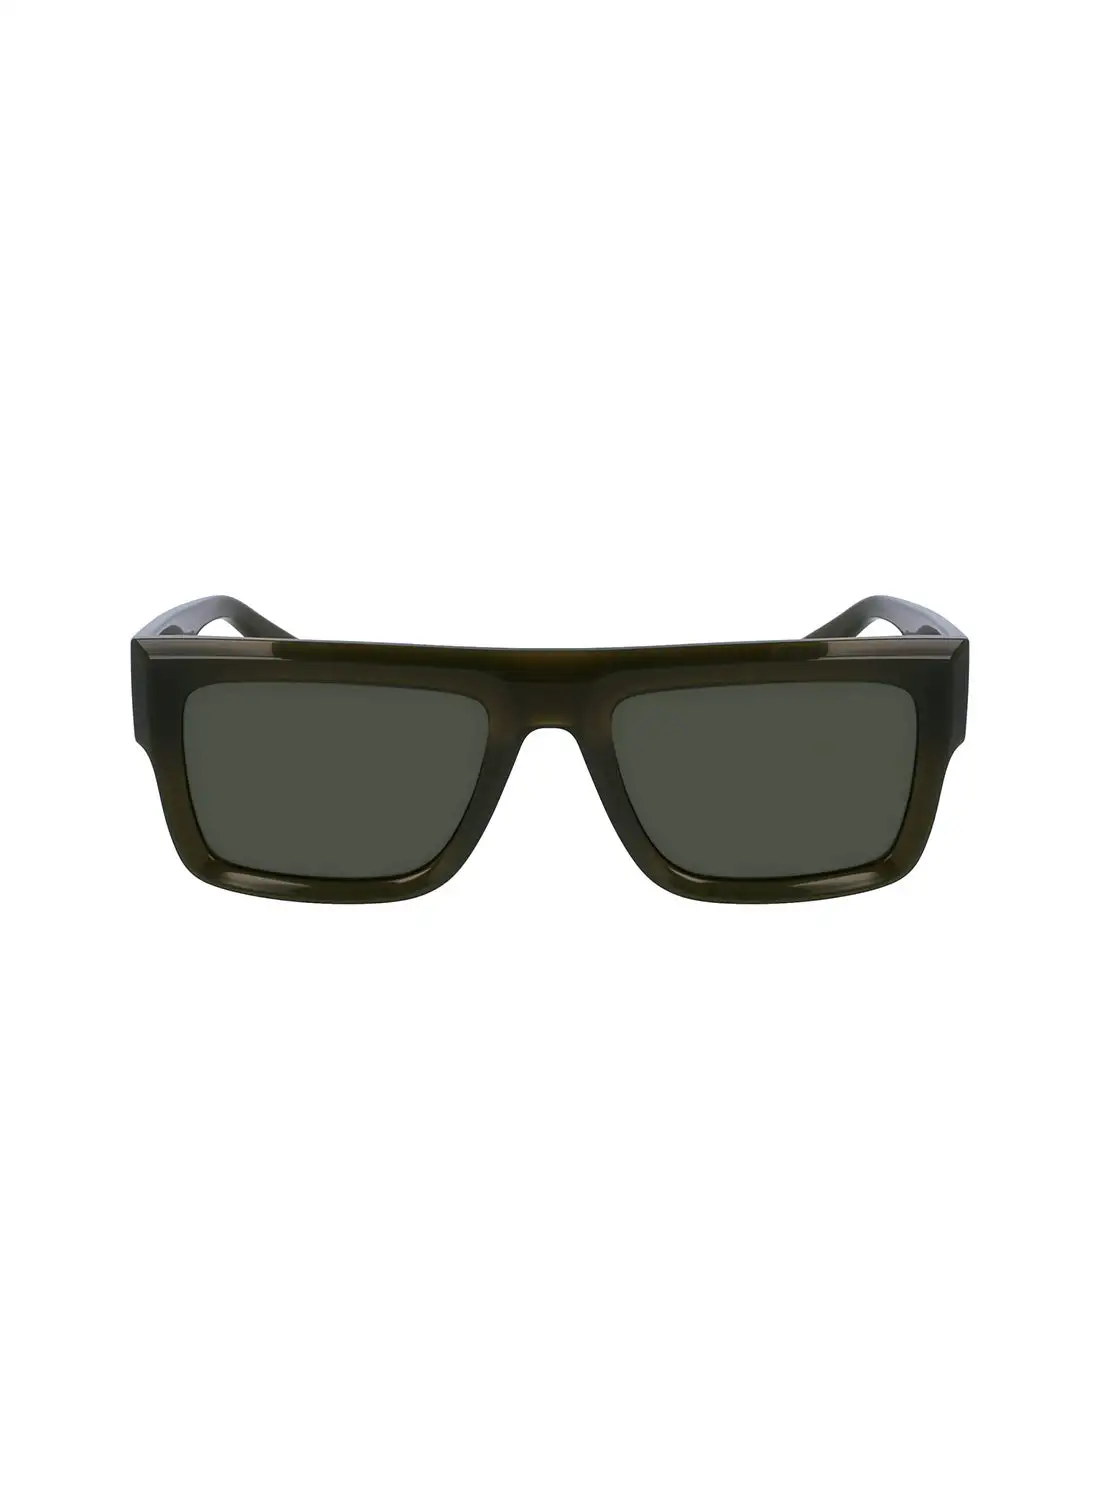 Calvin Klein Jeans Unisex Rectangular Sunglasses - CKJ23642S-306-5419 - Lens Size: 54 Mm